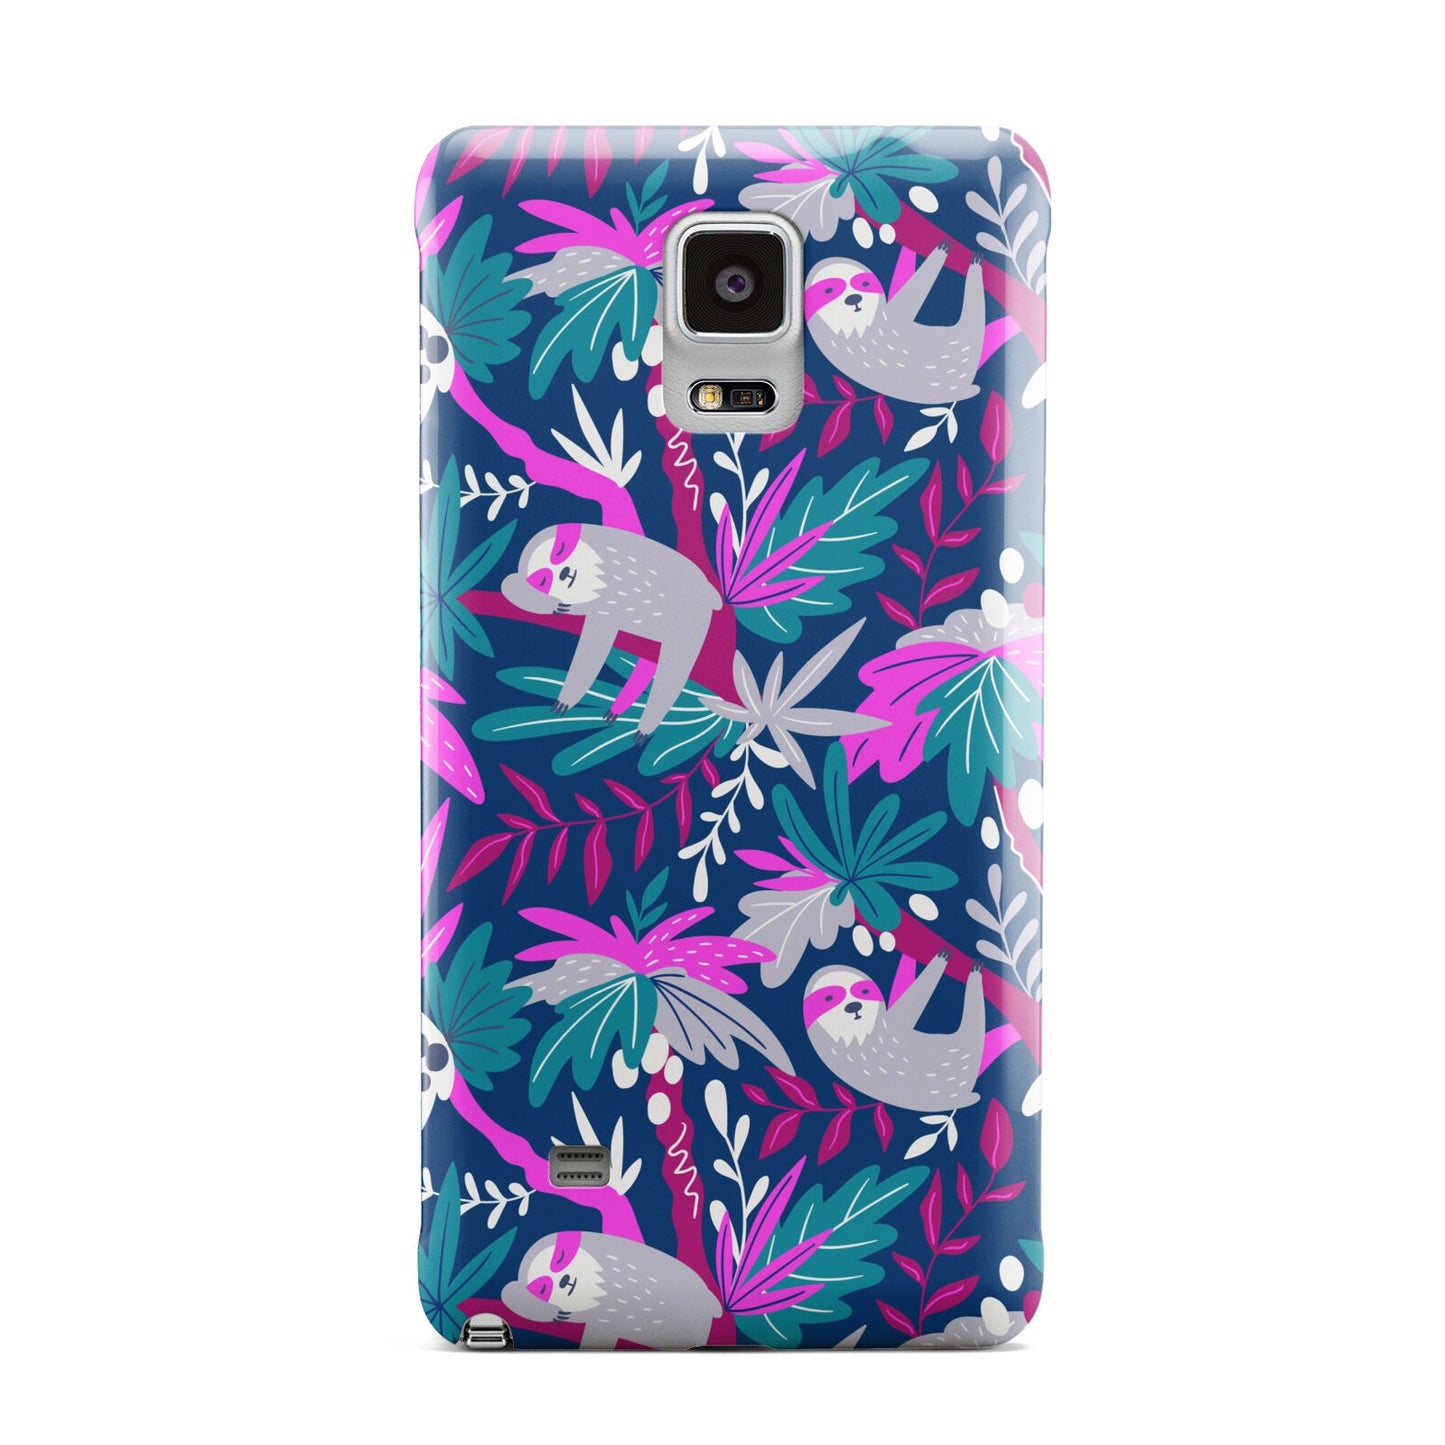 Sloth Samsung Galaxy Note 4 Case